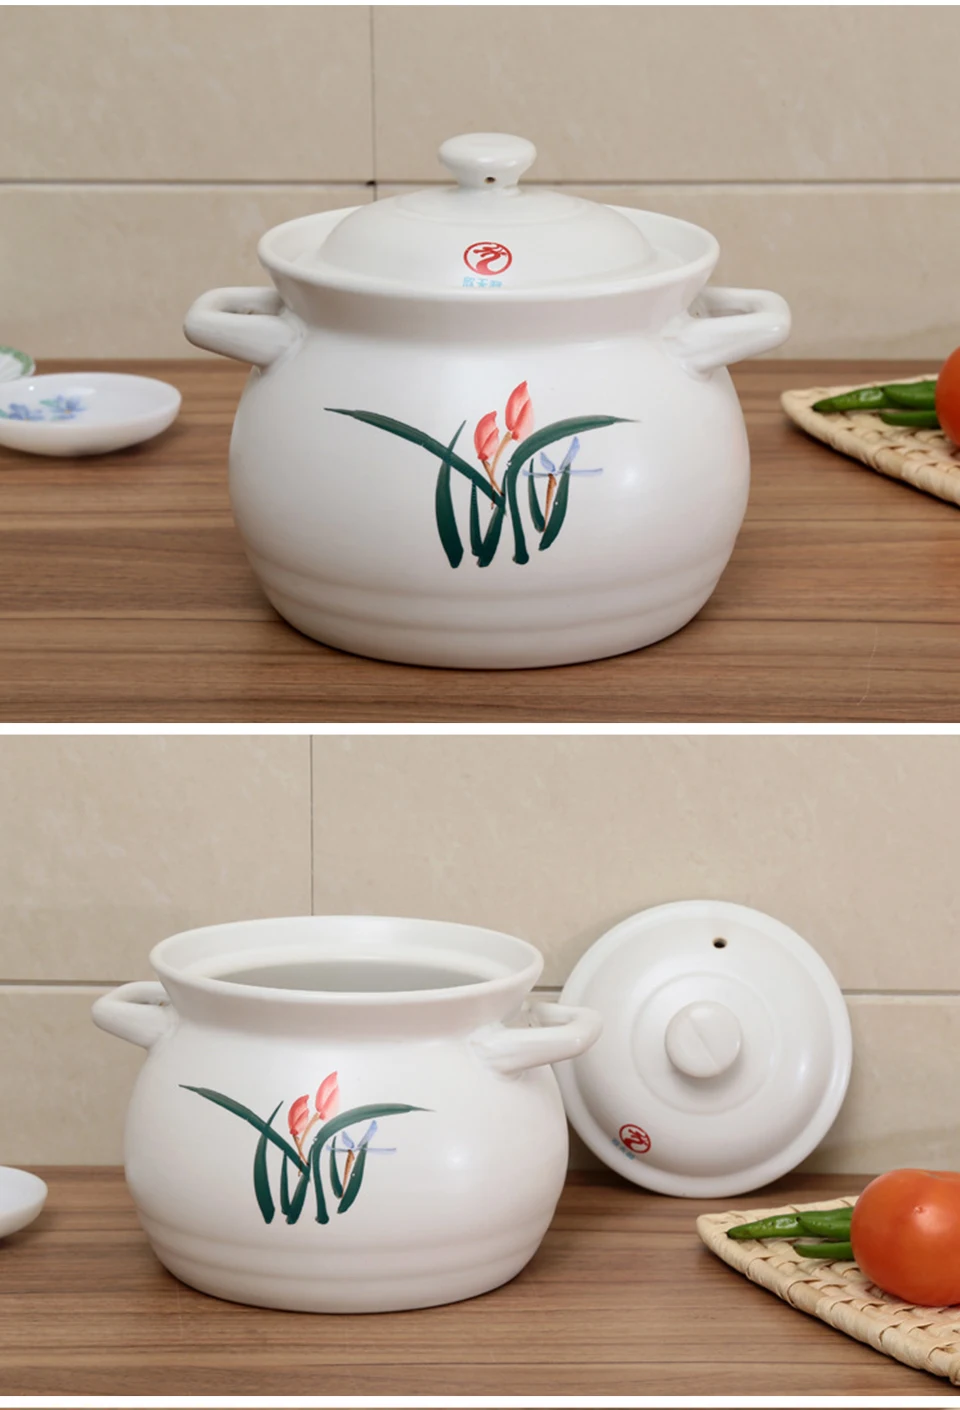 CAKEHOUD домашняя кухня китайская керамическая сковорода плита Подходит для всех методов приготовления антипригарная керамическая кастрюля